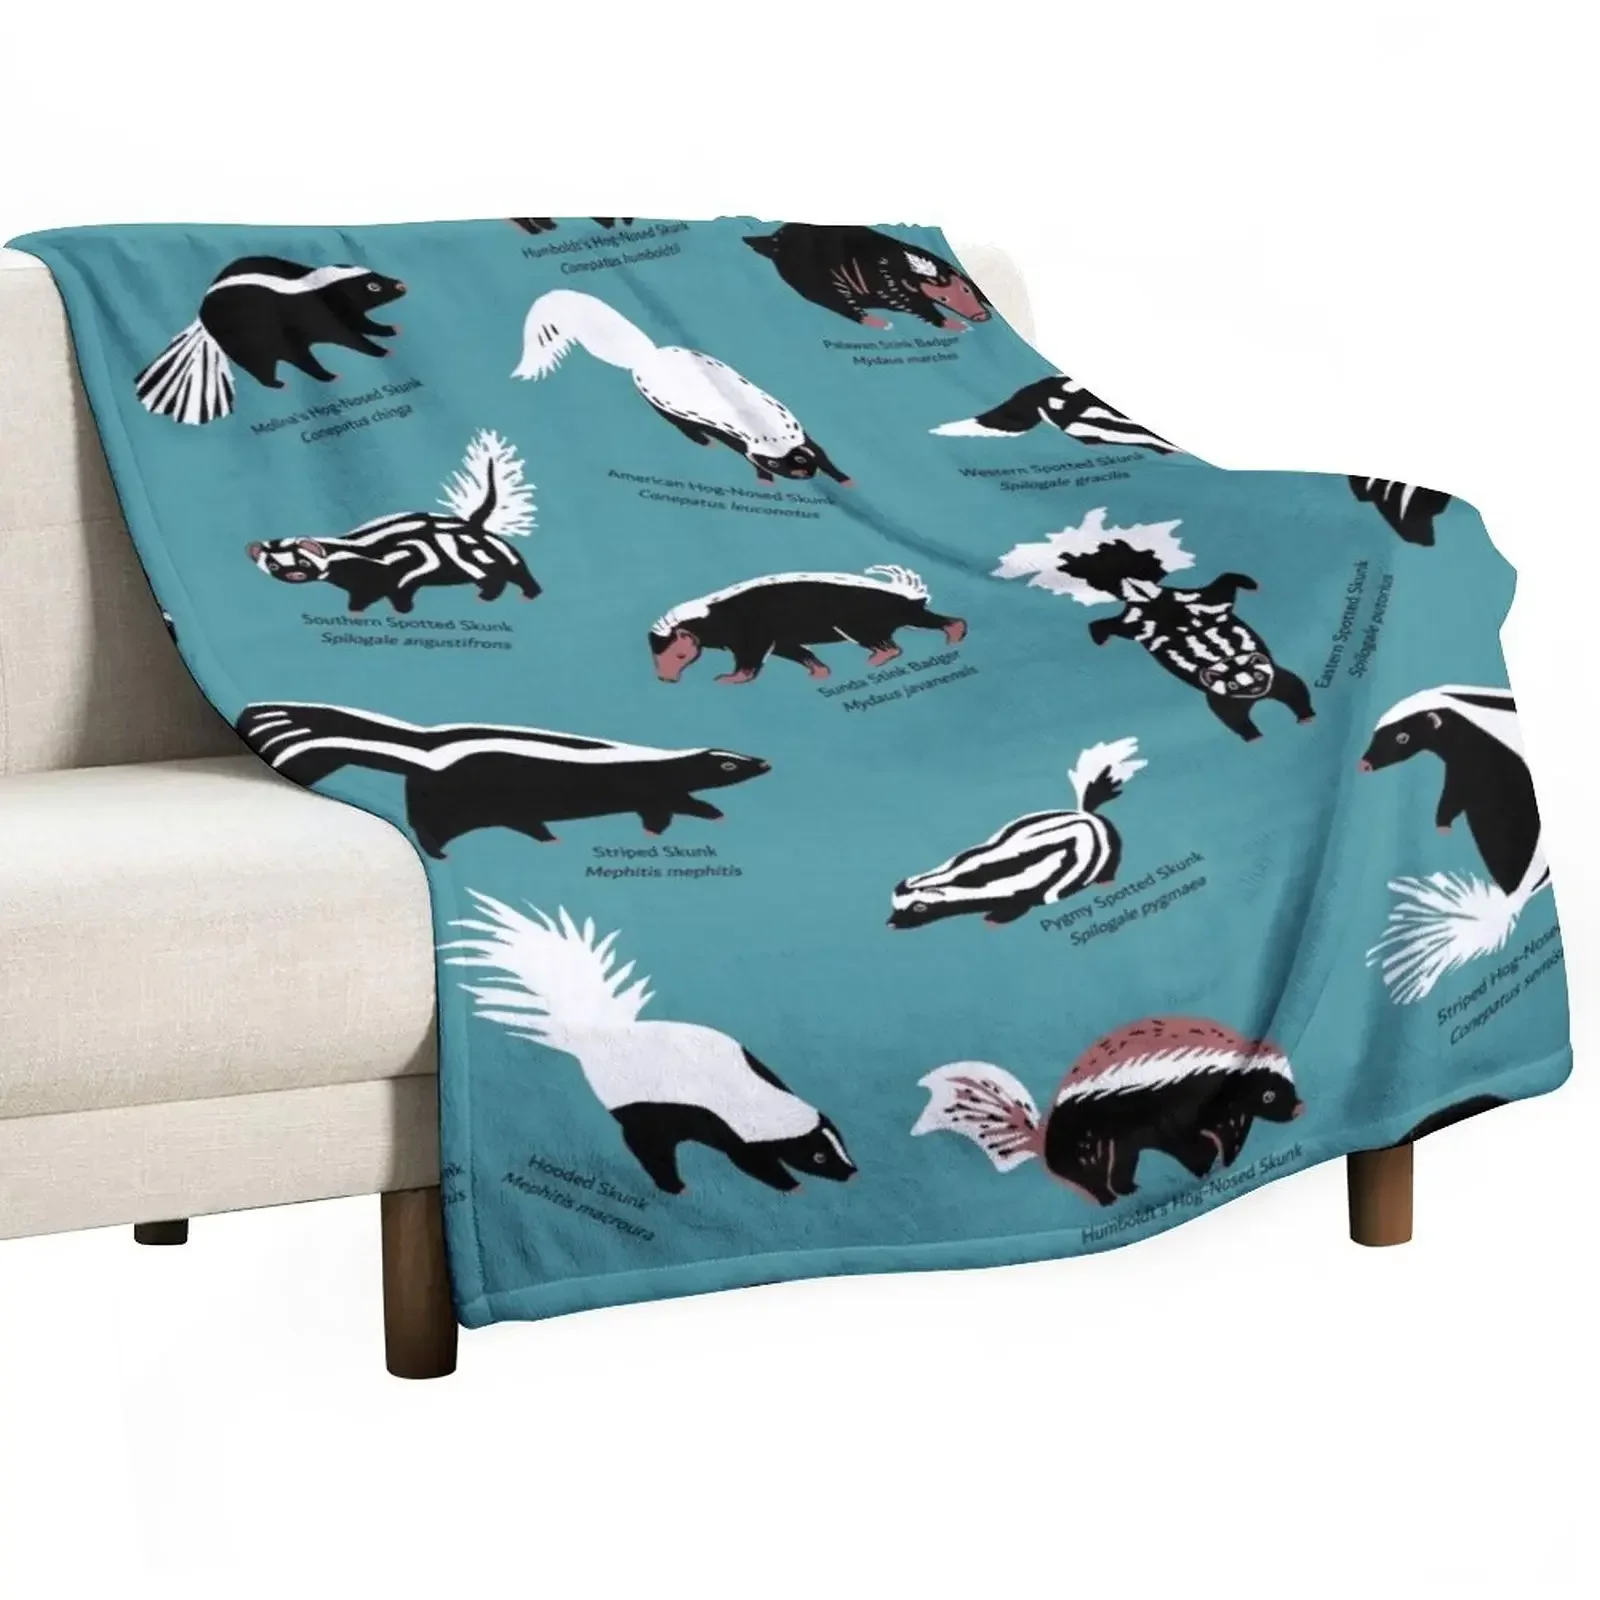 

Skunks of the World: семейное одеяло с изображением героев мультфильмов